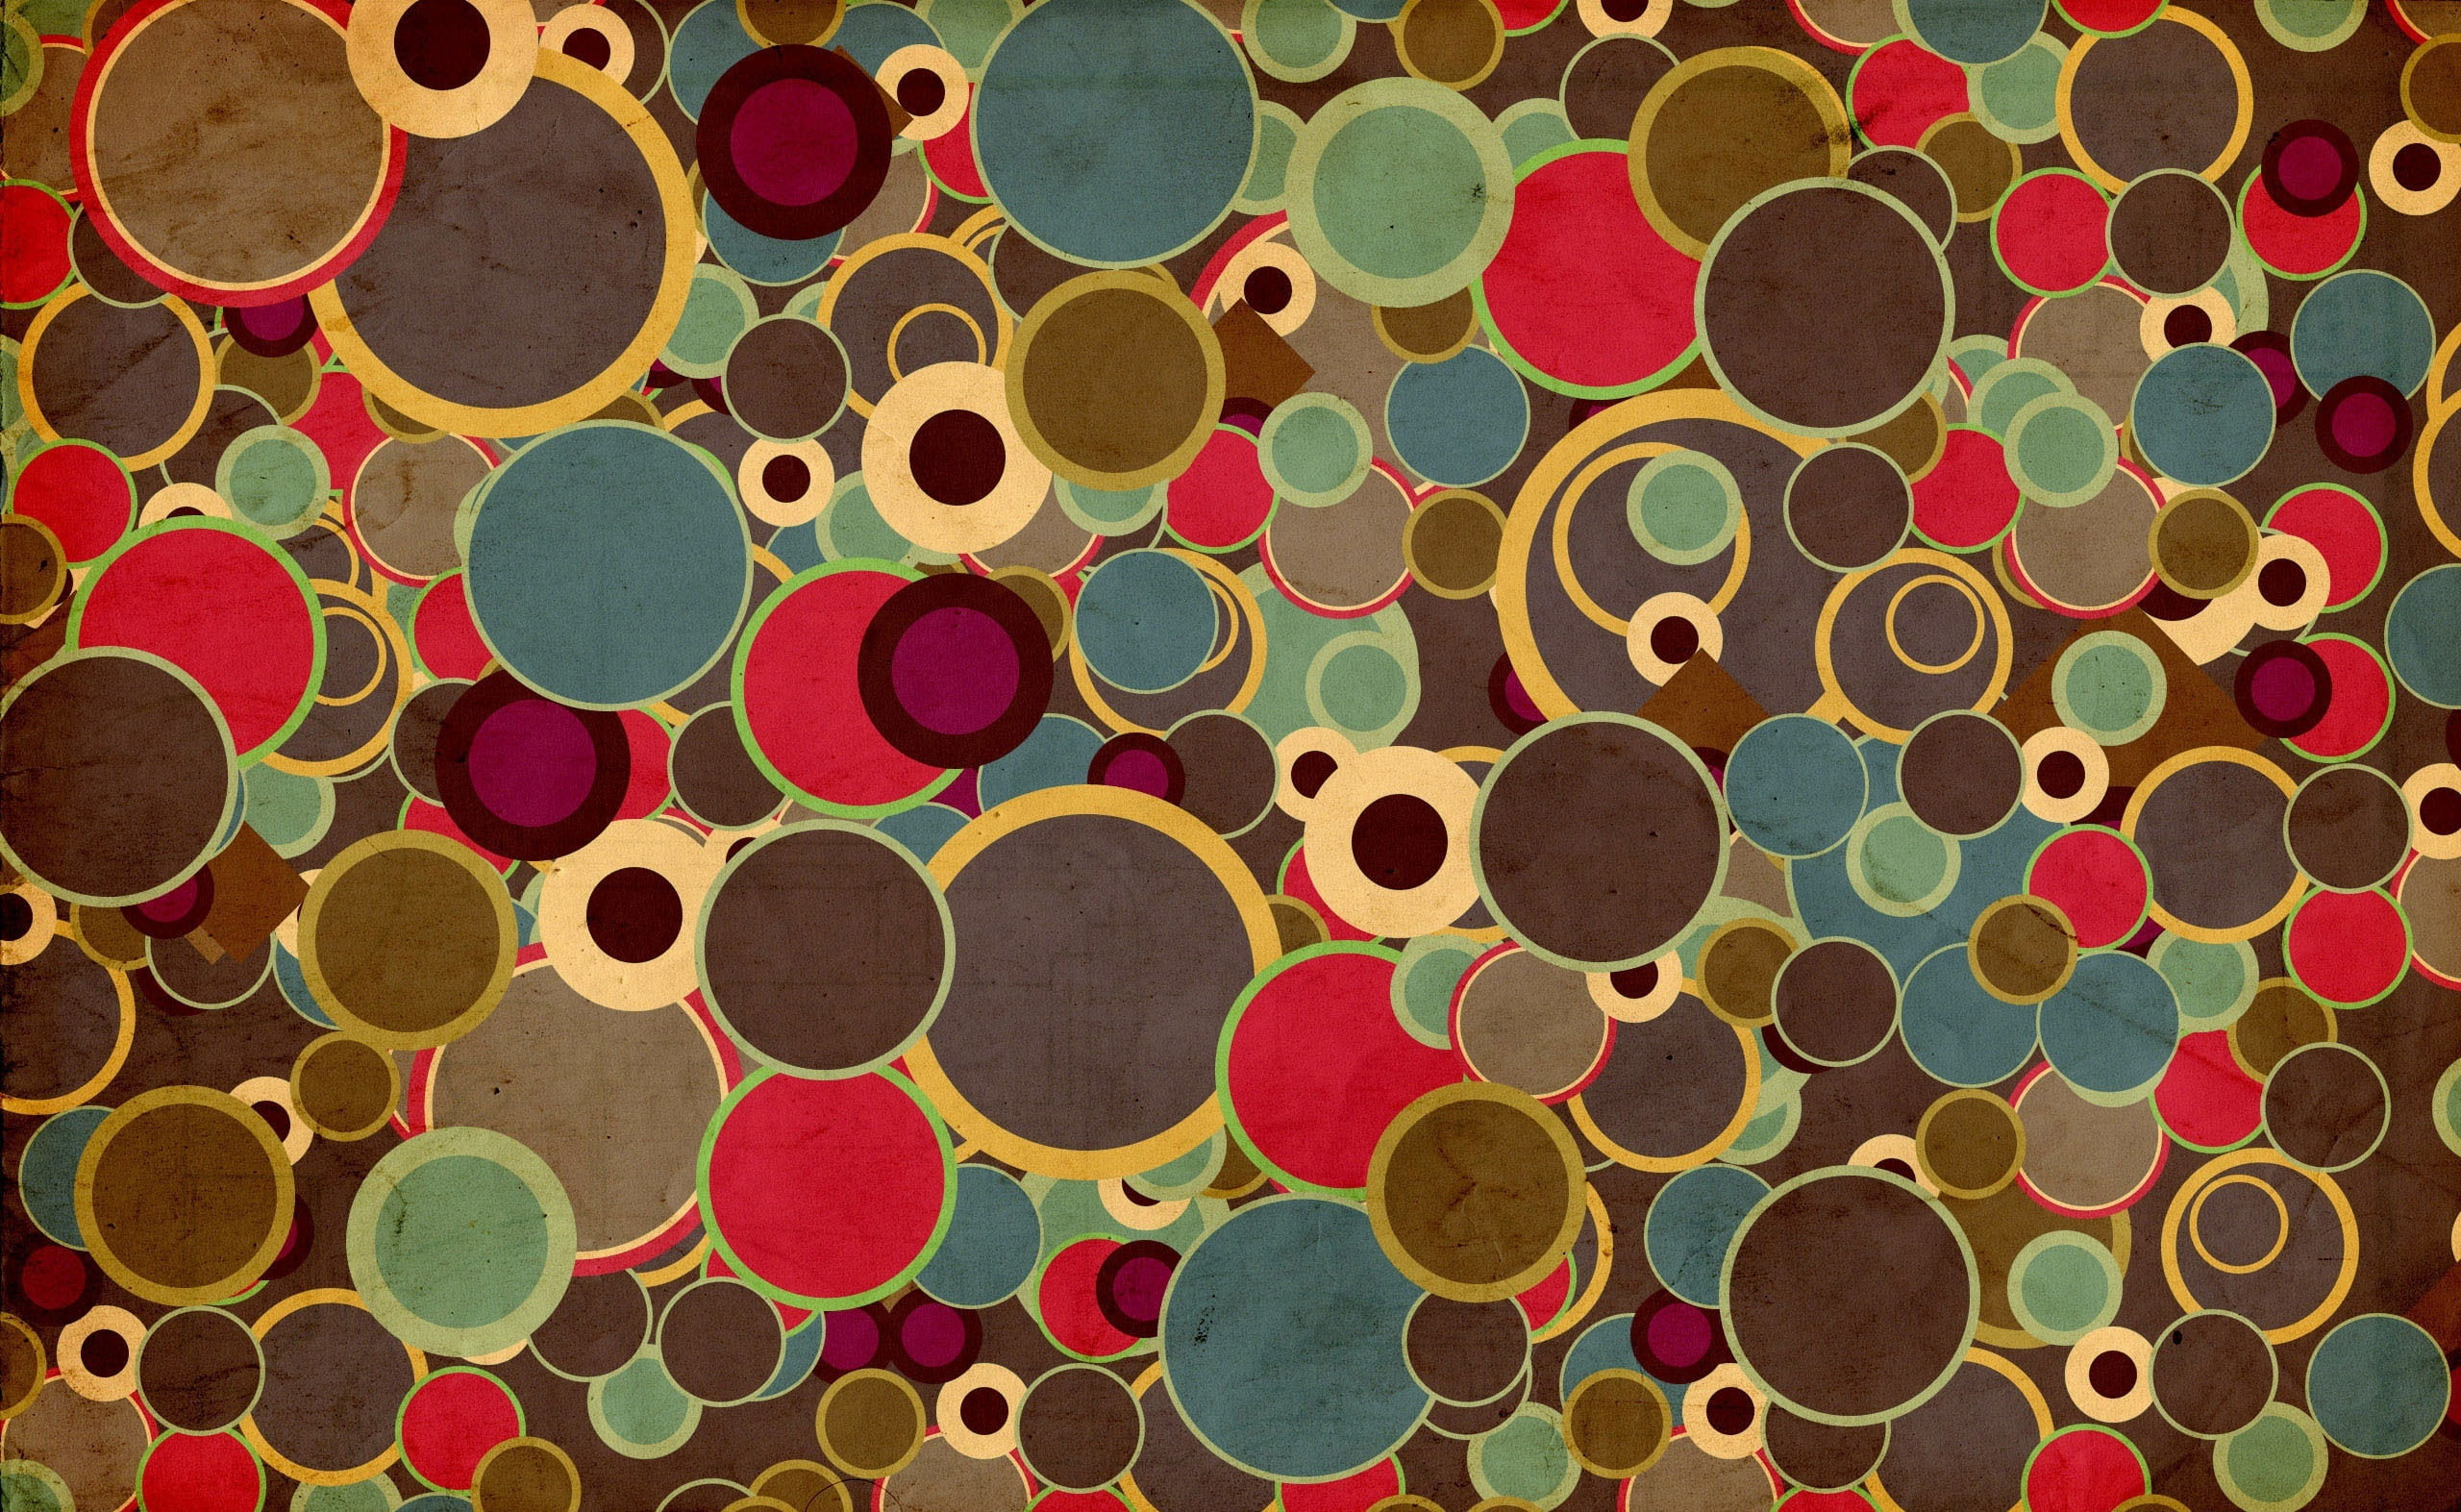 70’s Design wallpaper, assorted-color polka-dot lot illustration, Vintage